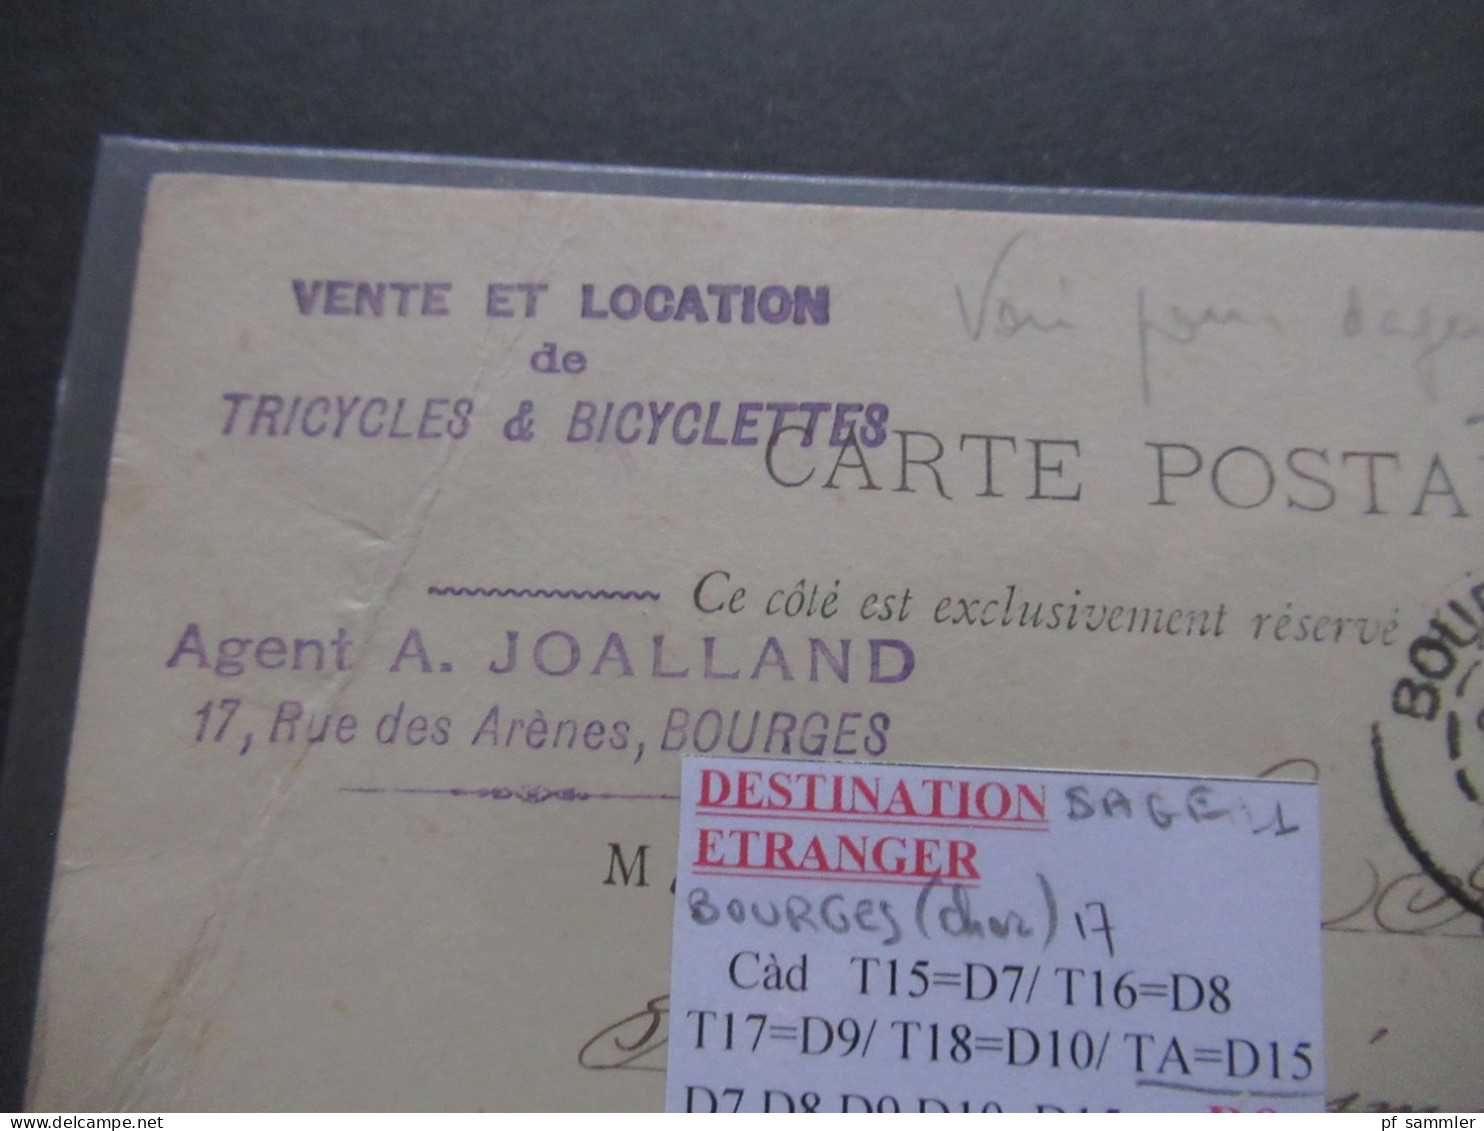 Frankreich 1889 / 1890 guter Ganzsachen Posten Auslands PK Paris nach Belgien viele Stempel Malines (Station) mit 10 Stk